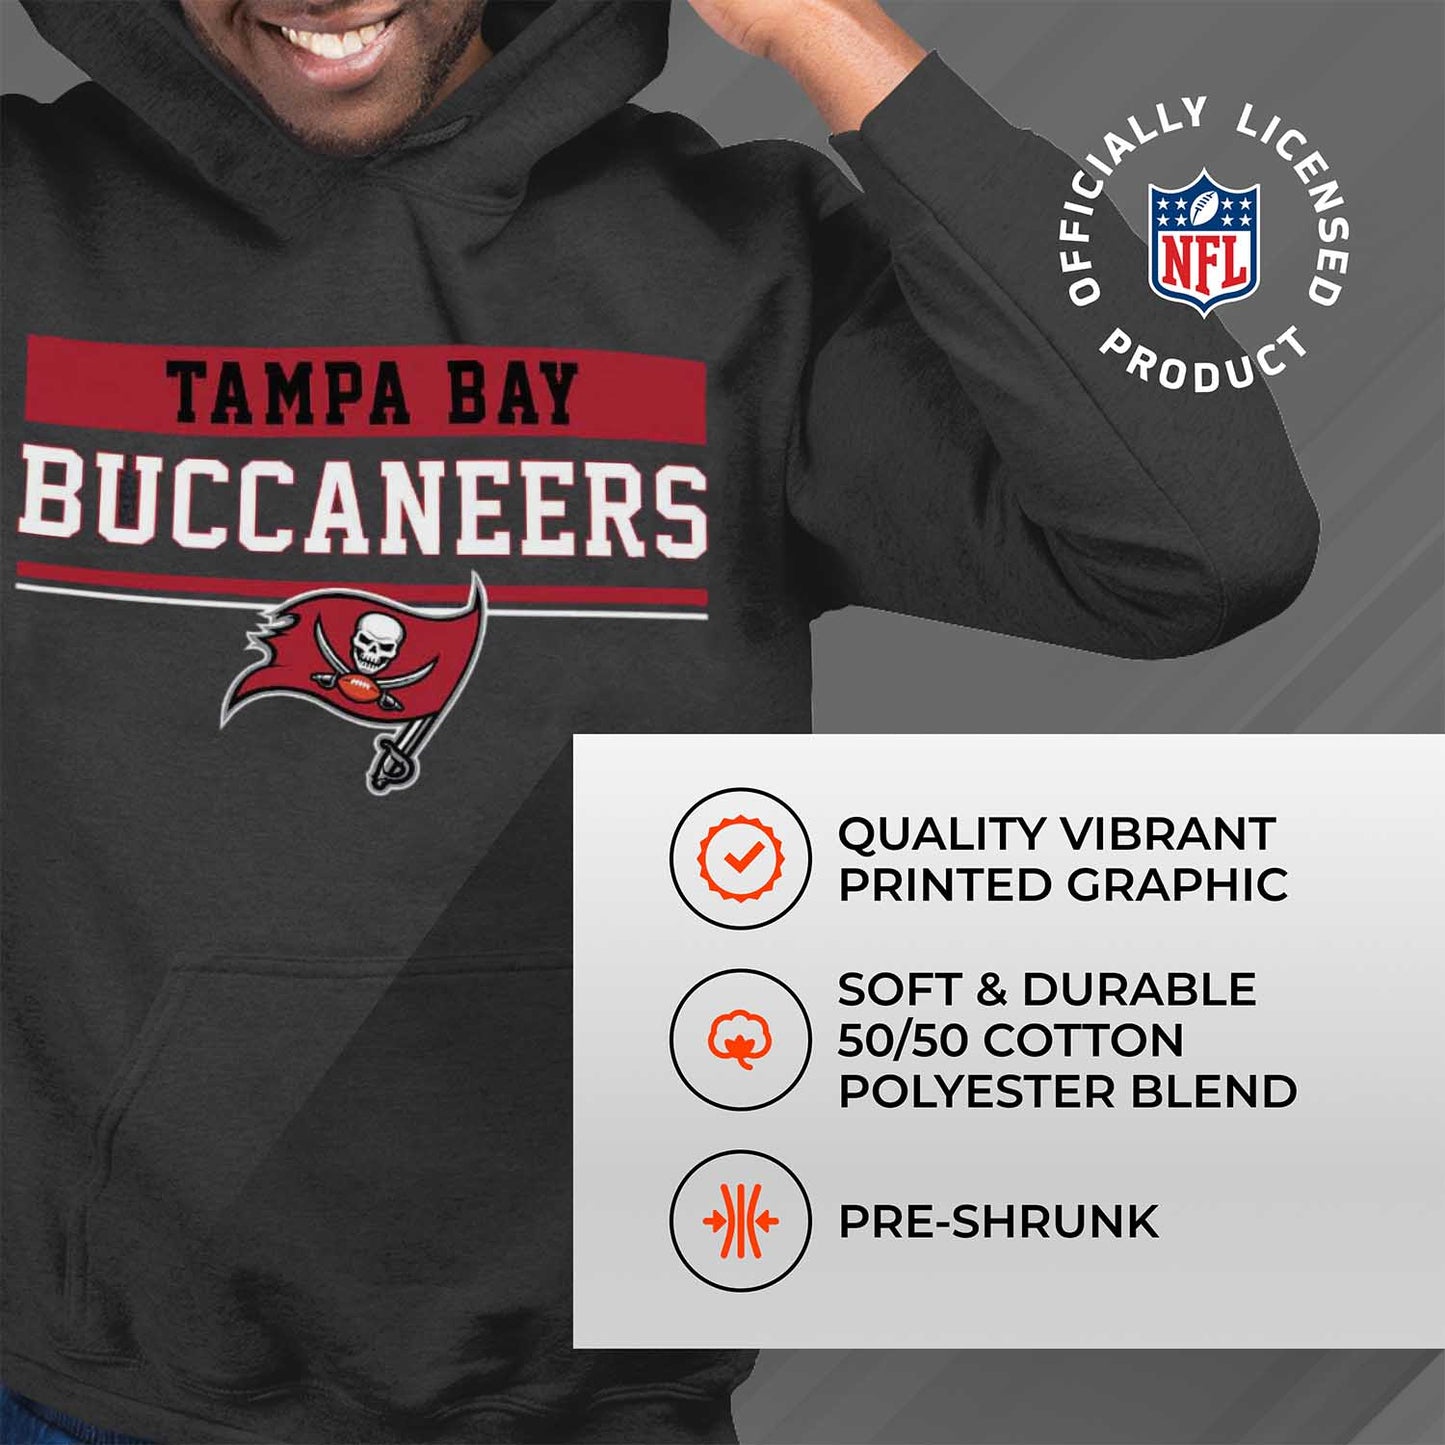 Tampa Bay Buccaneers NFL Adult Gameday Charcoal Hooded Sweatshirt - Charcoal